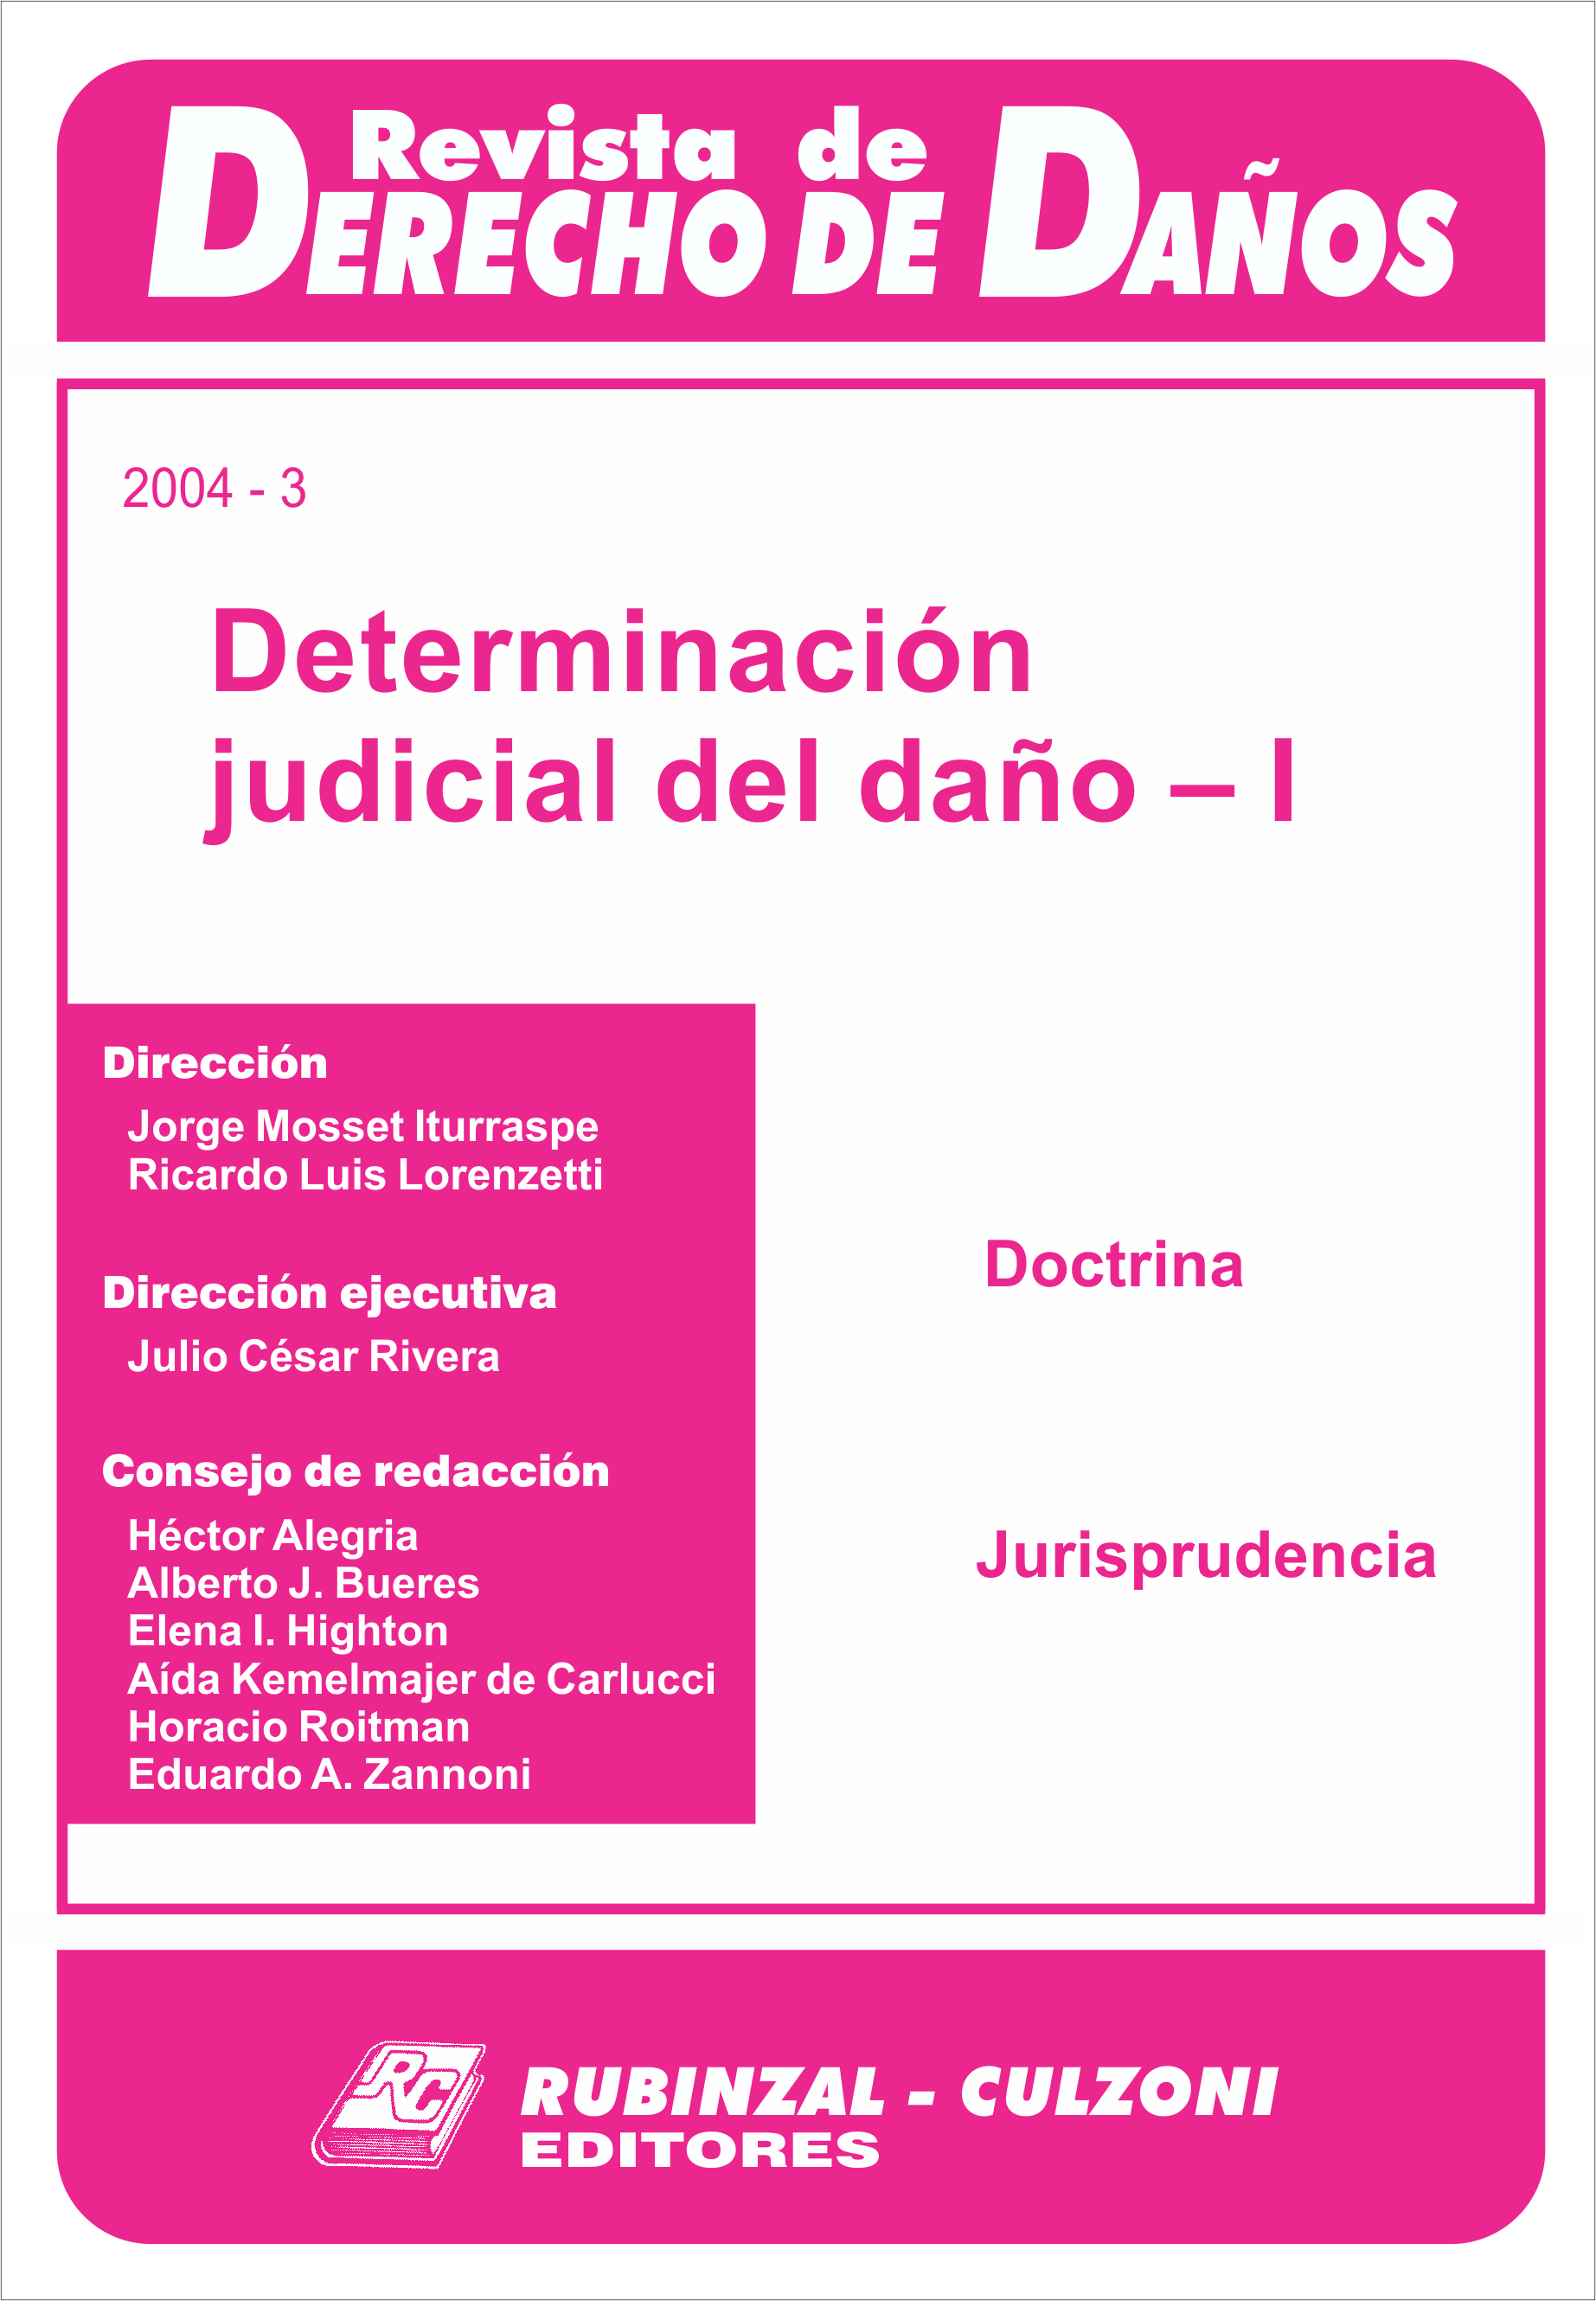 Revista de Derecho de Daños - Determinación judicial del daño - I.